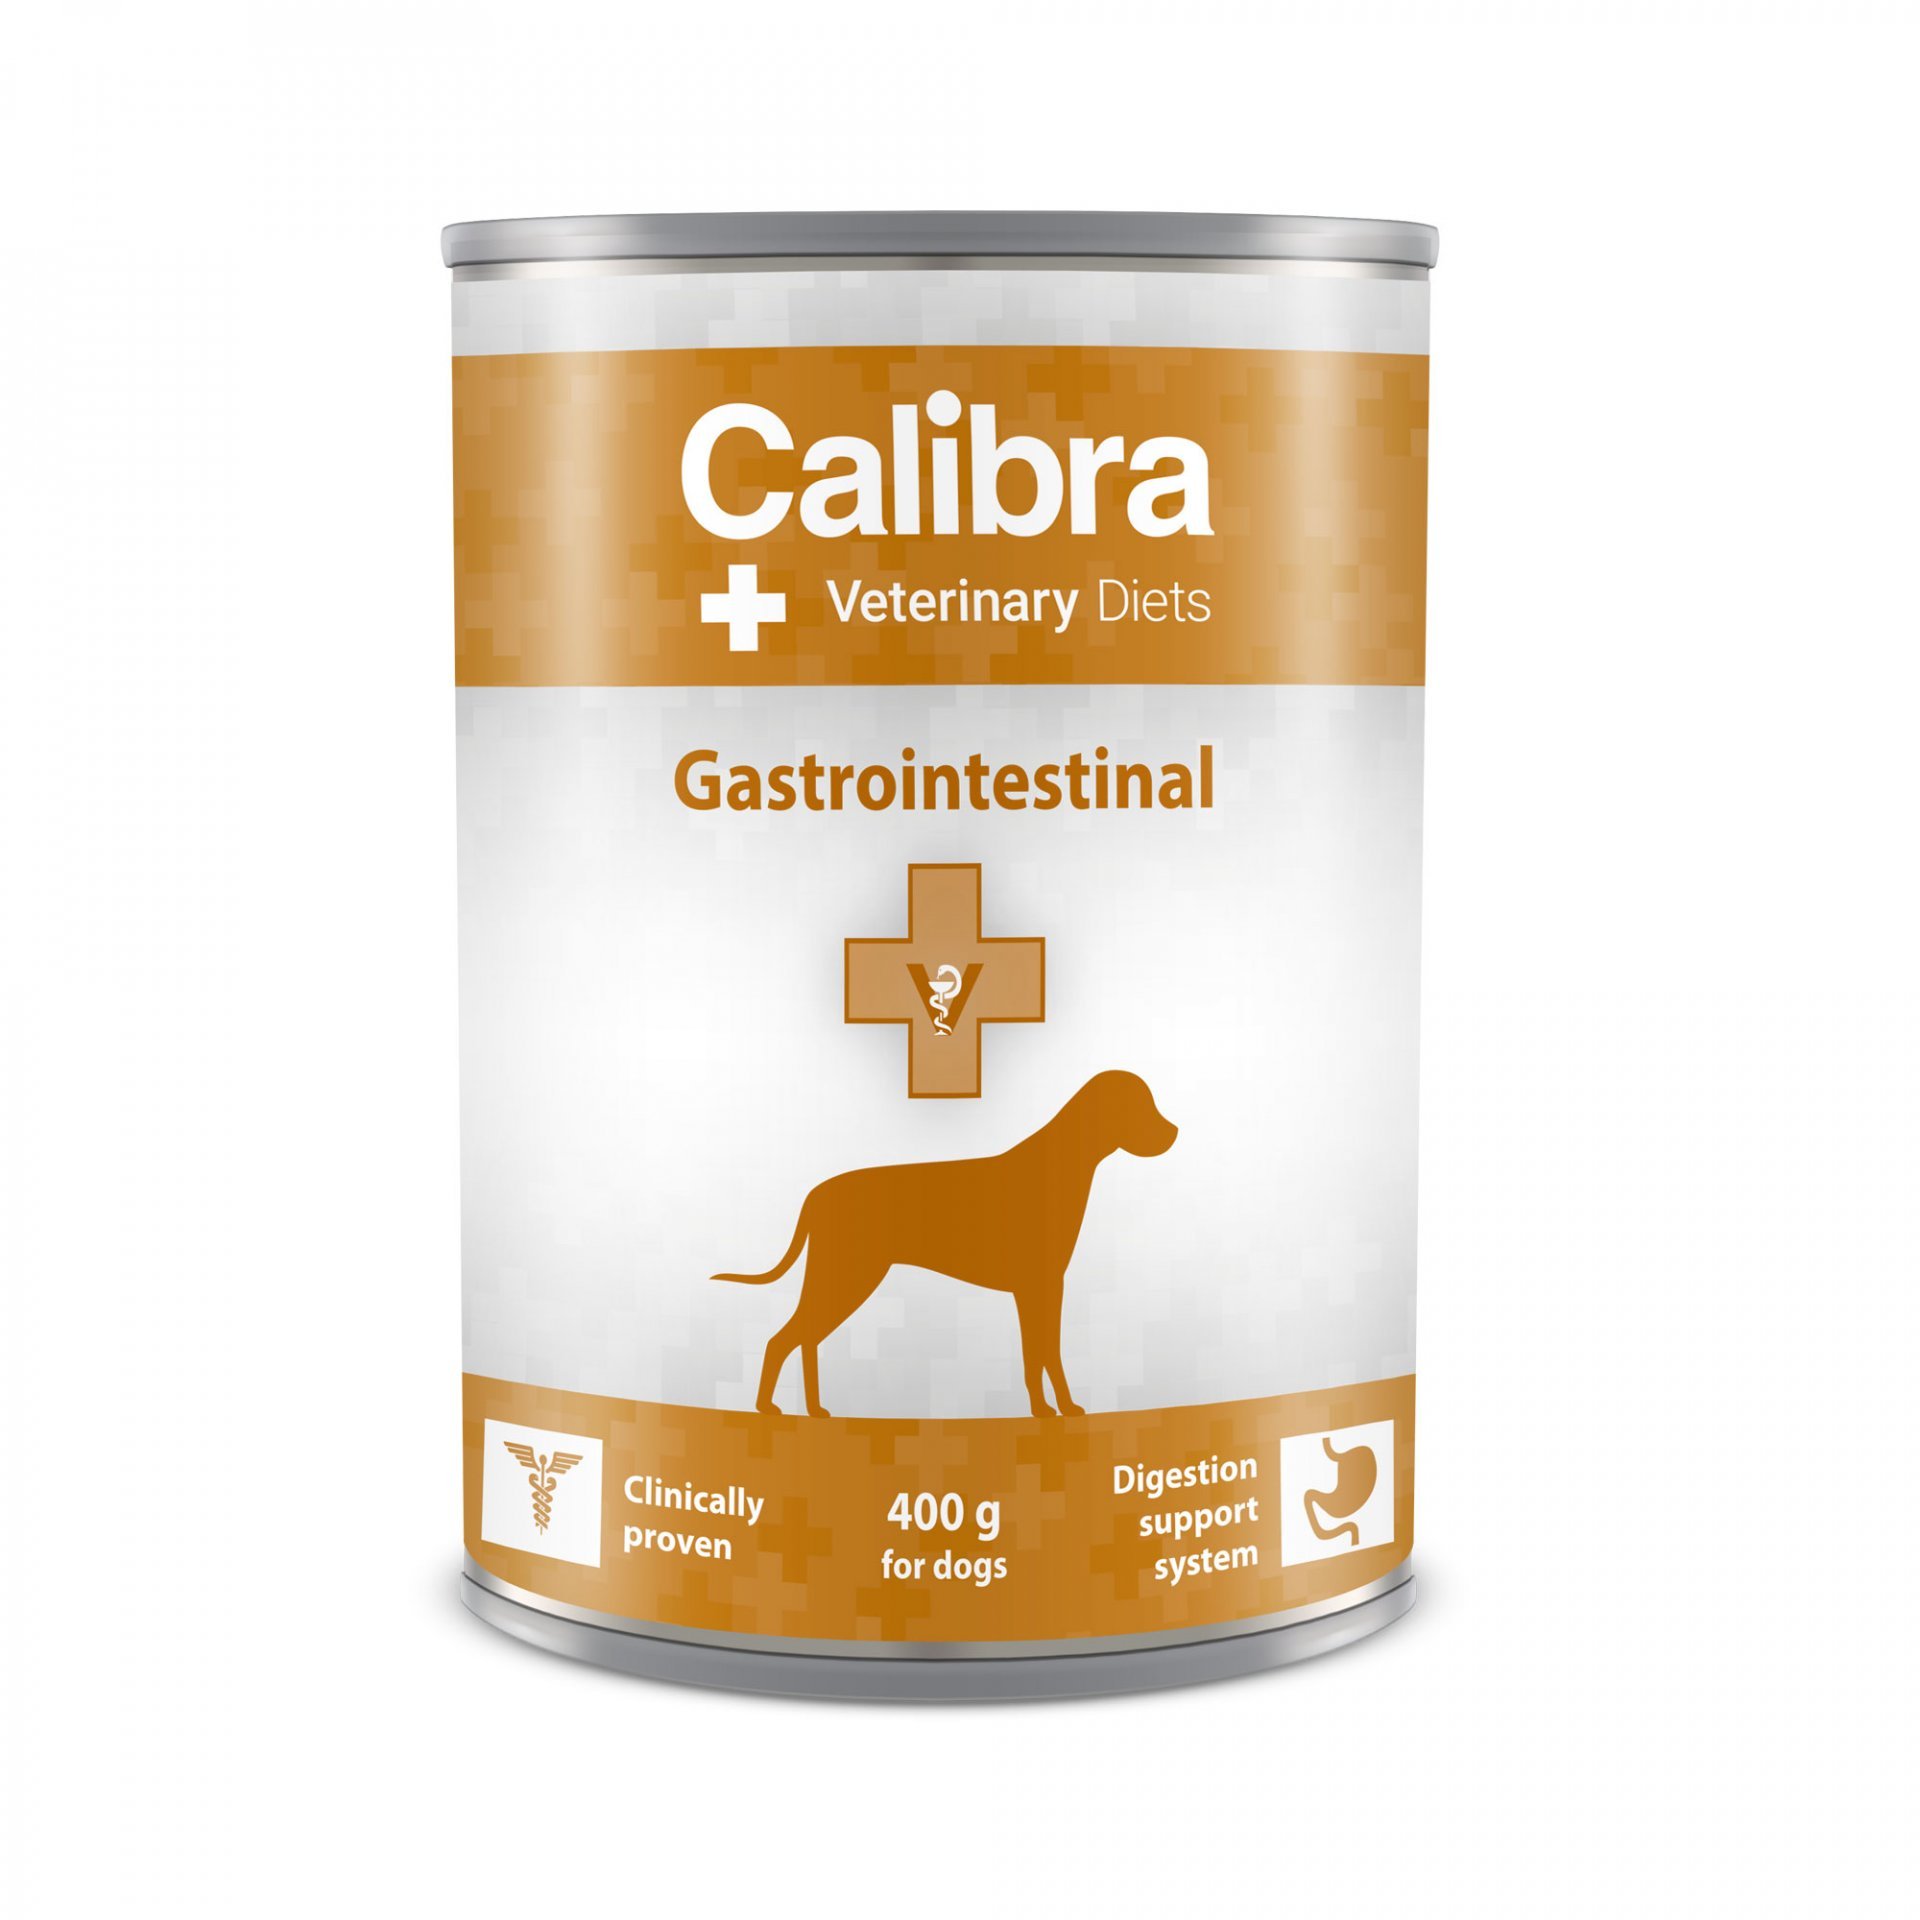 Gastrointestinal для собак. Hills Gastrointestinal для собак влажный корм. En Gastrointestinal для собак. Гастроинтестинал купить для собак. Гастро купить для собак влажный корм интестинал